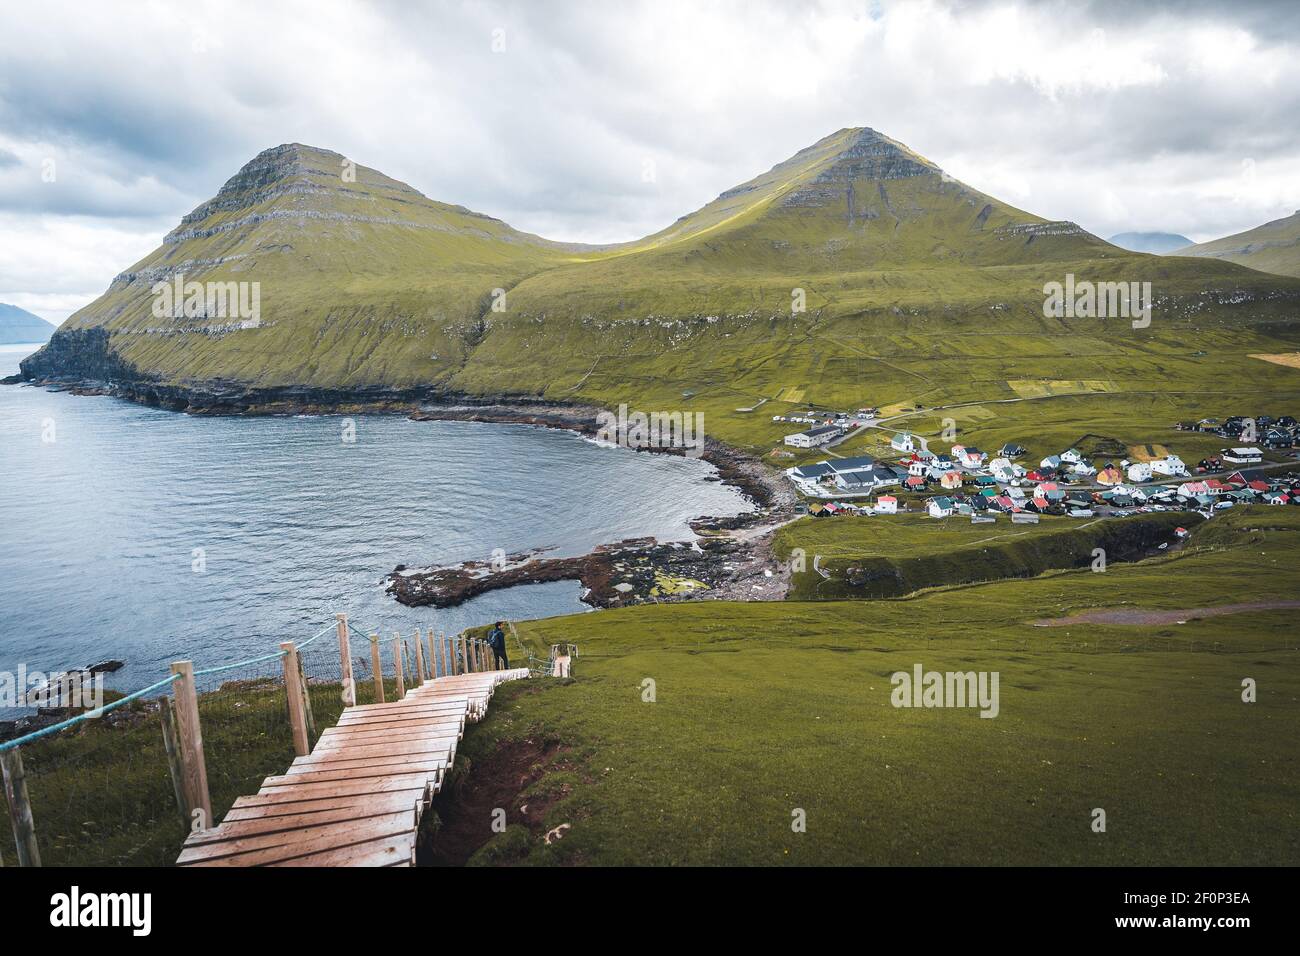 Isole Faroe villaggio di Gjogv o Gjov in danese. Gola piena di mare sulla punta nord-orientale dell'isola di Eysturoy, nelle Isole Faroe. Foto Stock